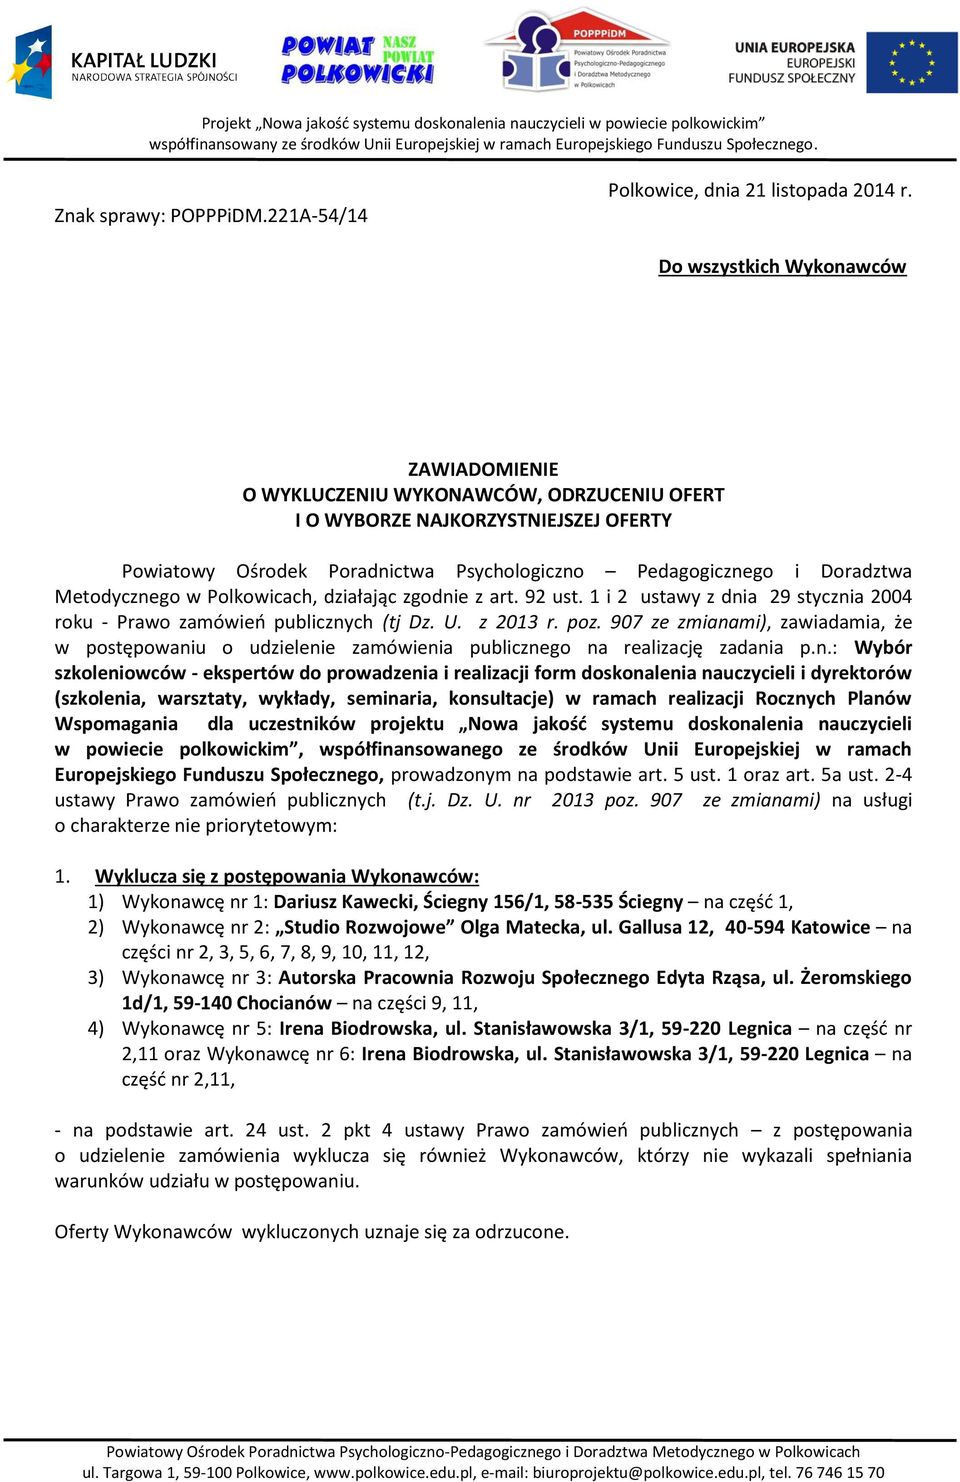 Metodycznego w Polkowicach, działając zgodnie z art. 92 ust. 1 i 2 ustawy z dnia 29 stycznia 2004 roku - Prawo zamówień publicznych (tj Dz. U. z 2013 r. poz.